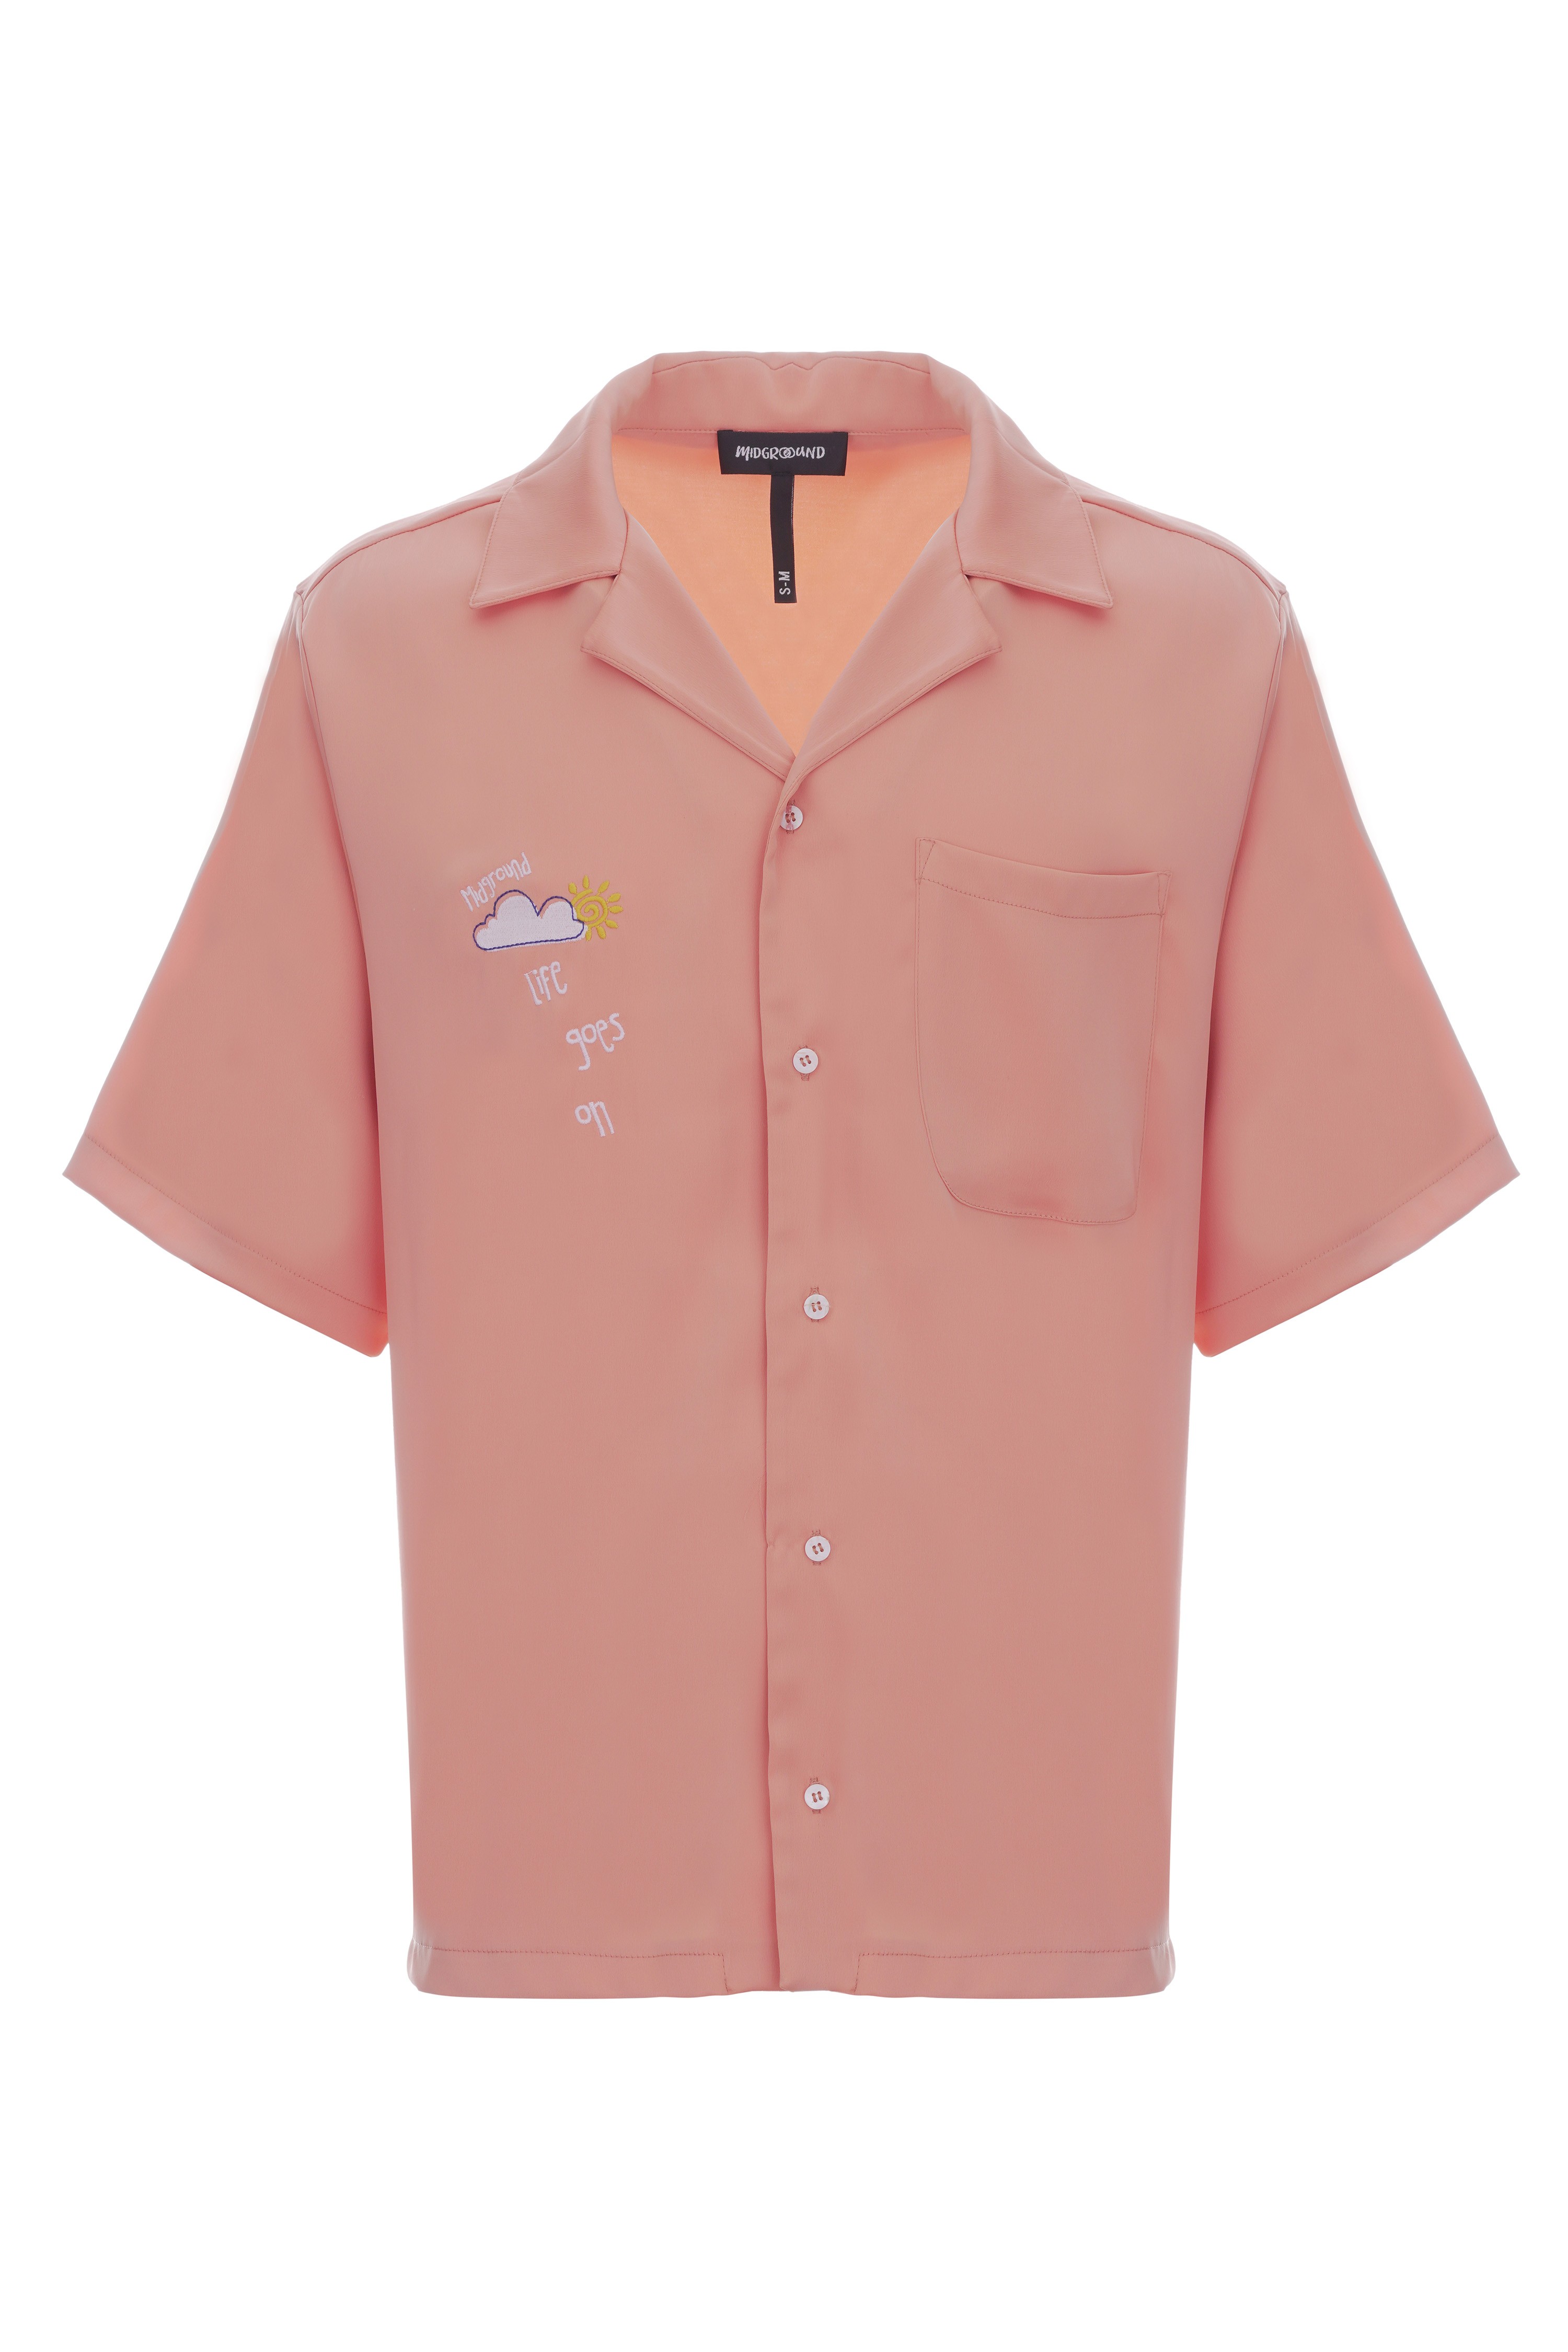 Drop #M153-2 Shirt - Orange